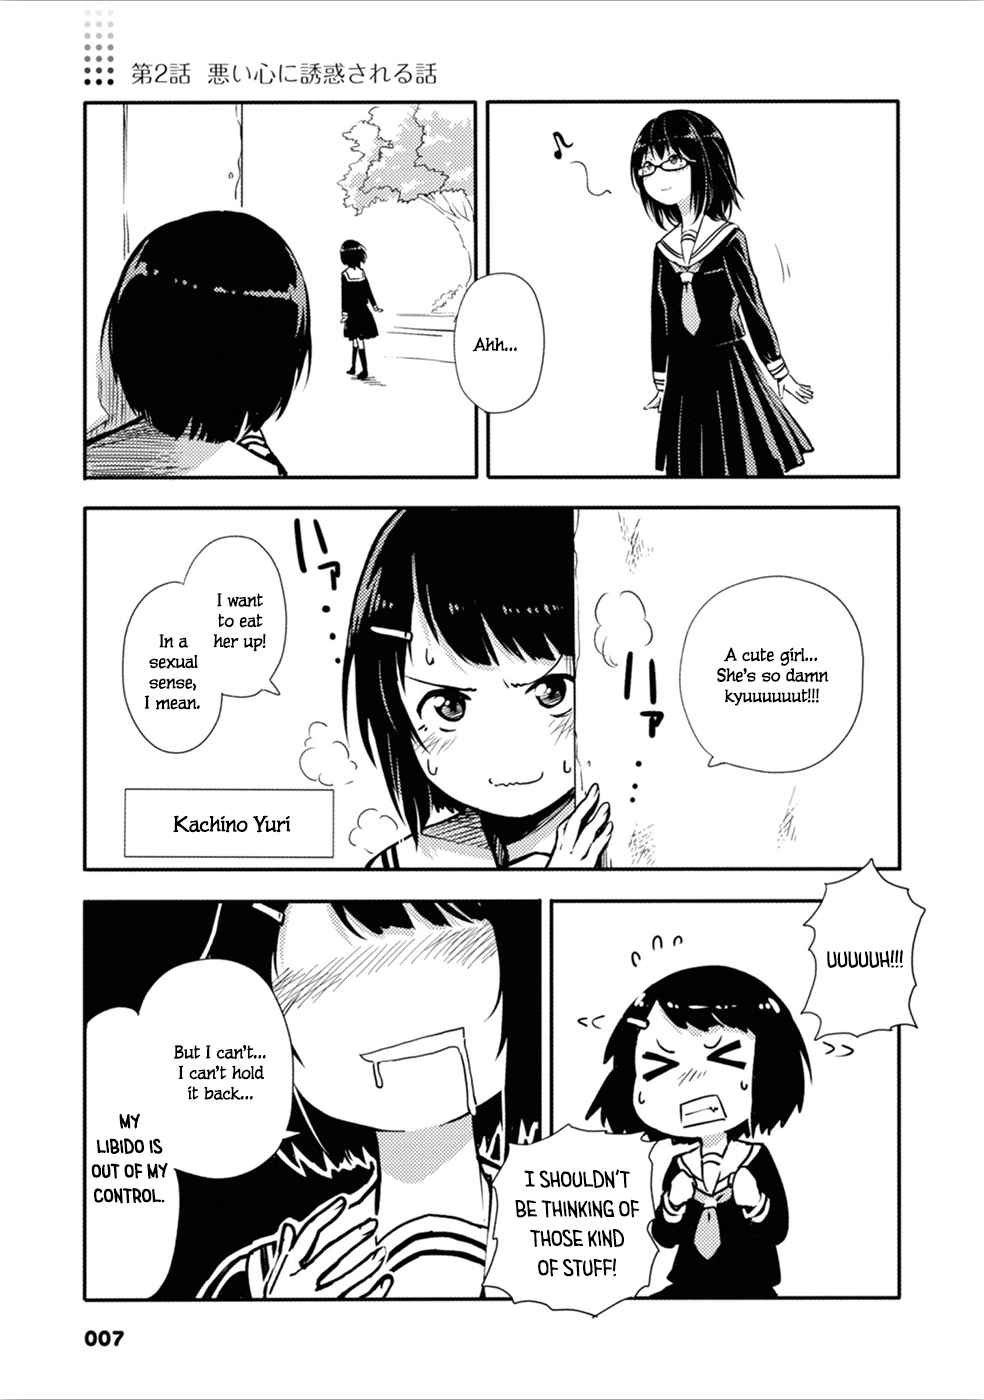 Sunami Yuuko to Yuri na Hitobito Vol. 1 Ch. 2